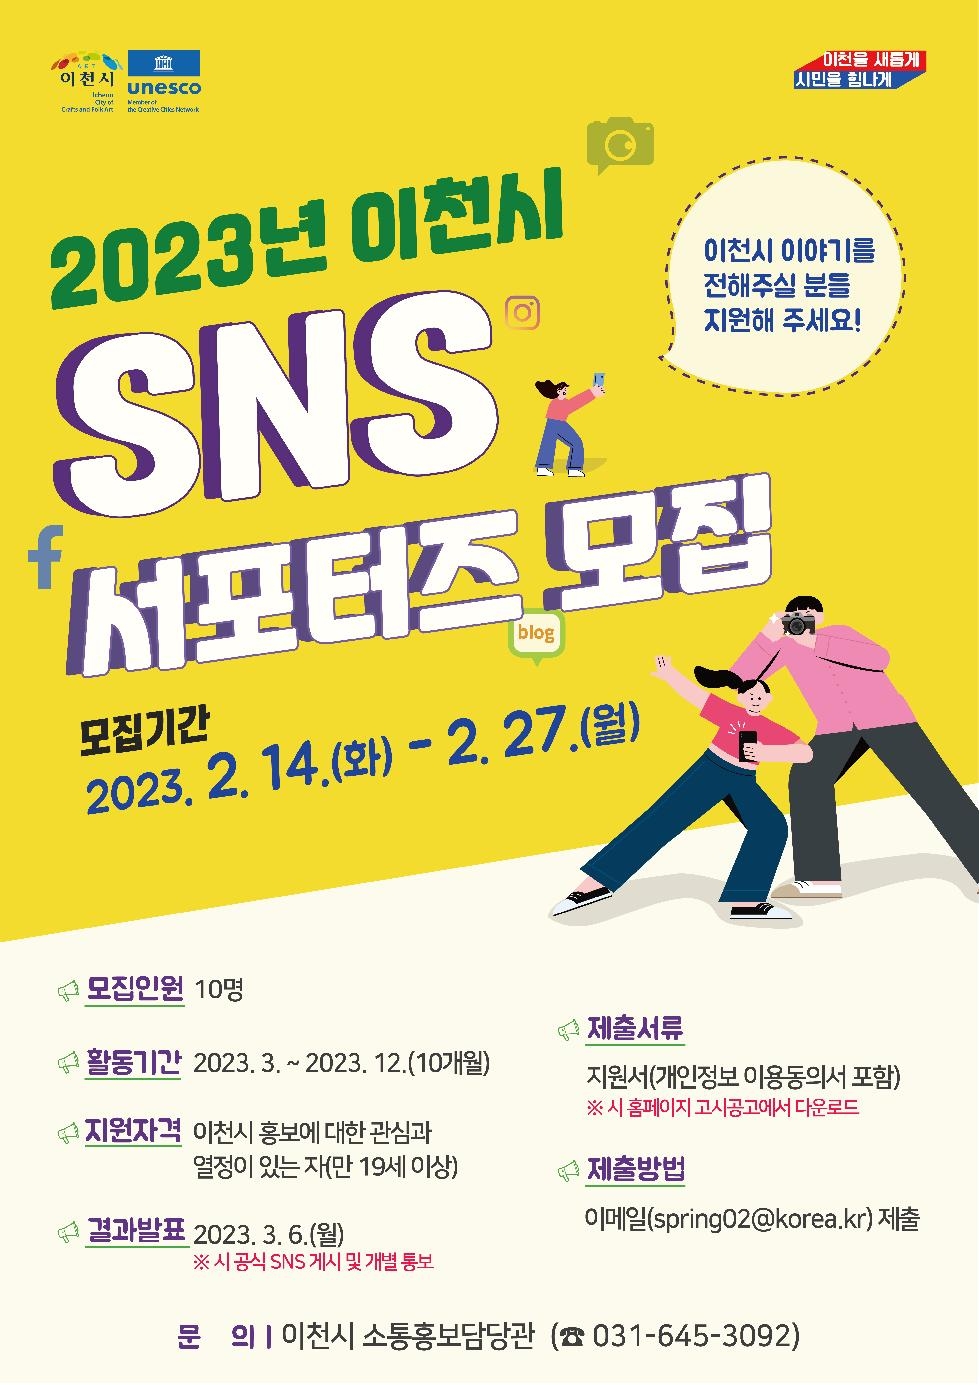 이천시,‘2023년 SNS 서포터즈’ 모집